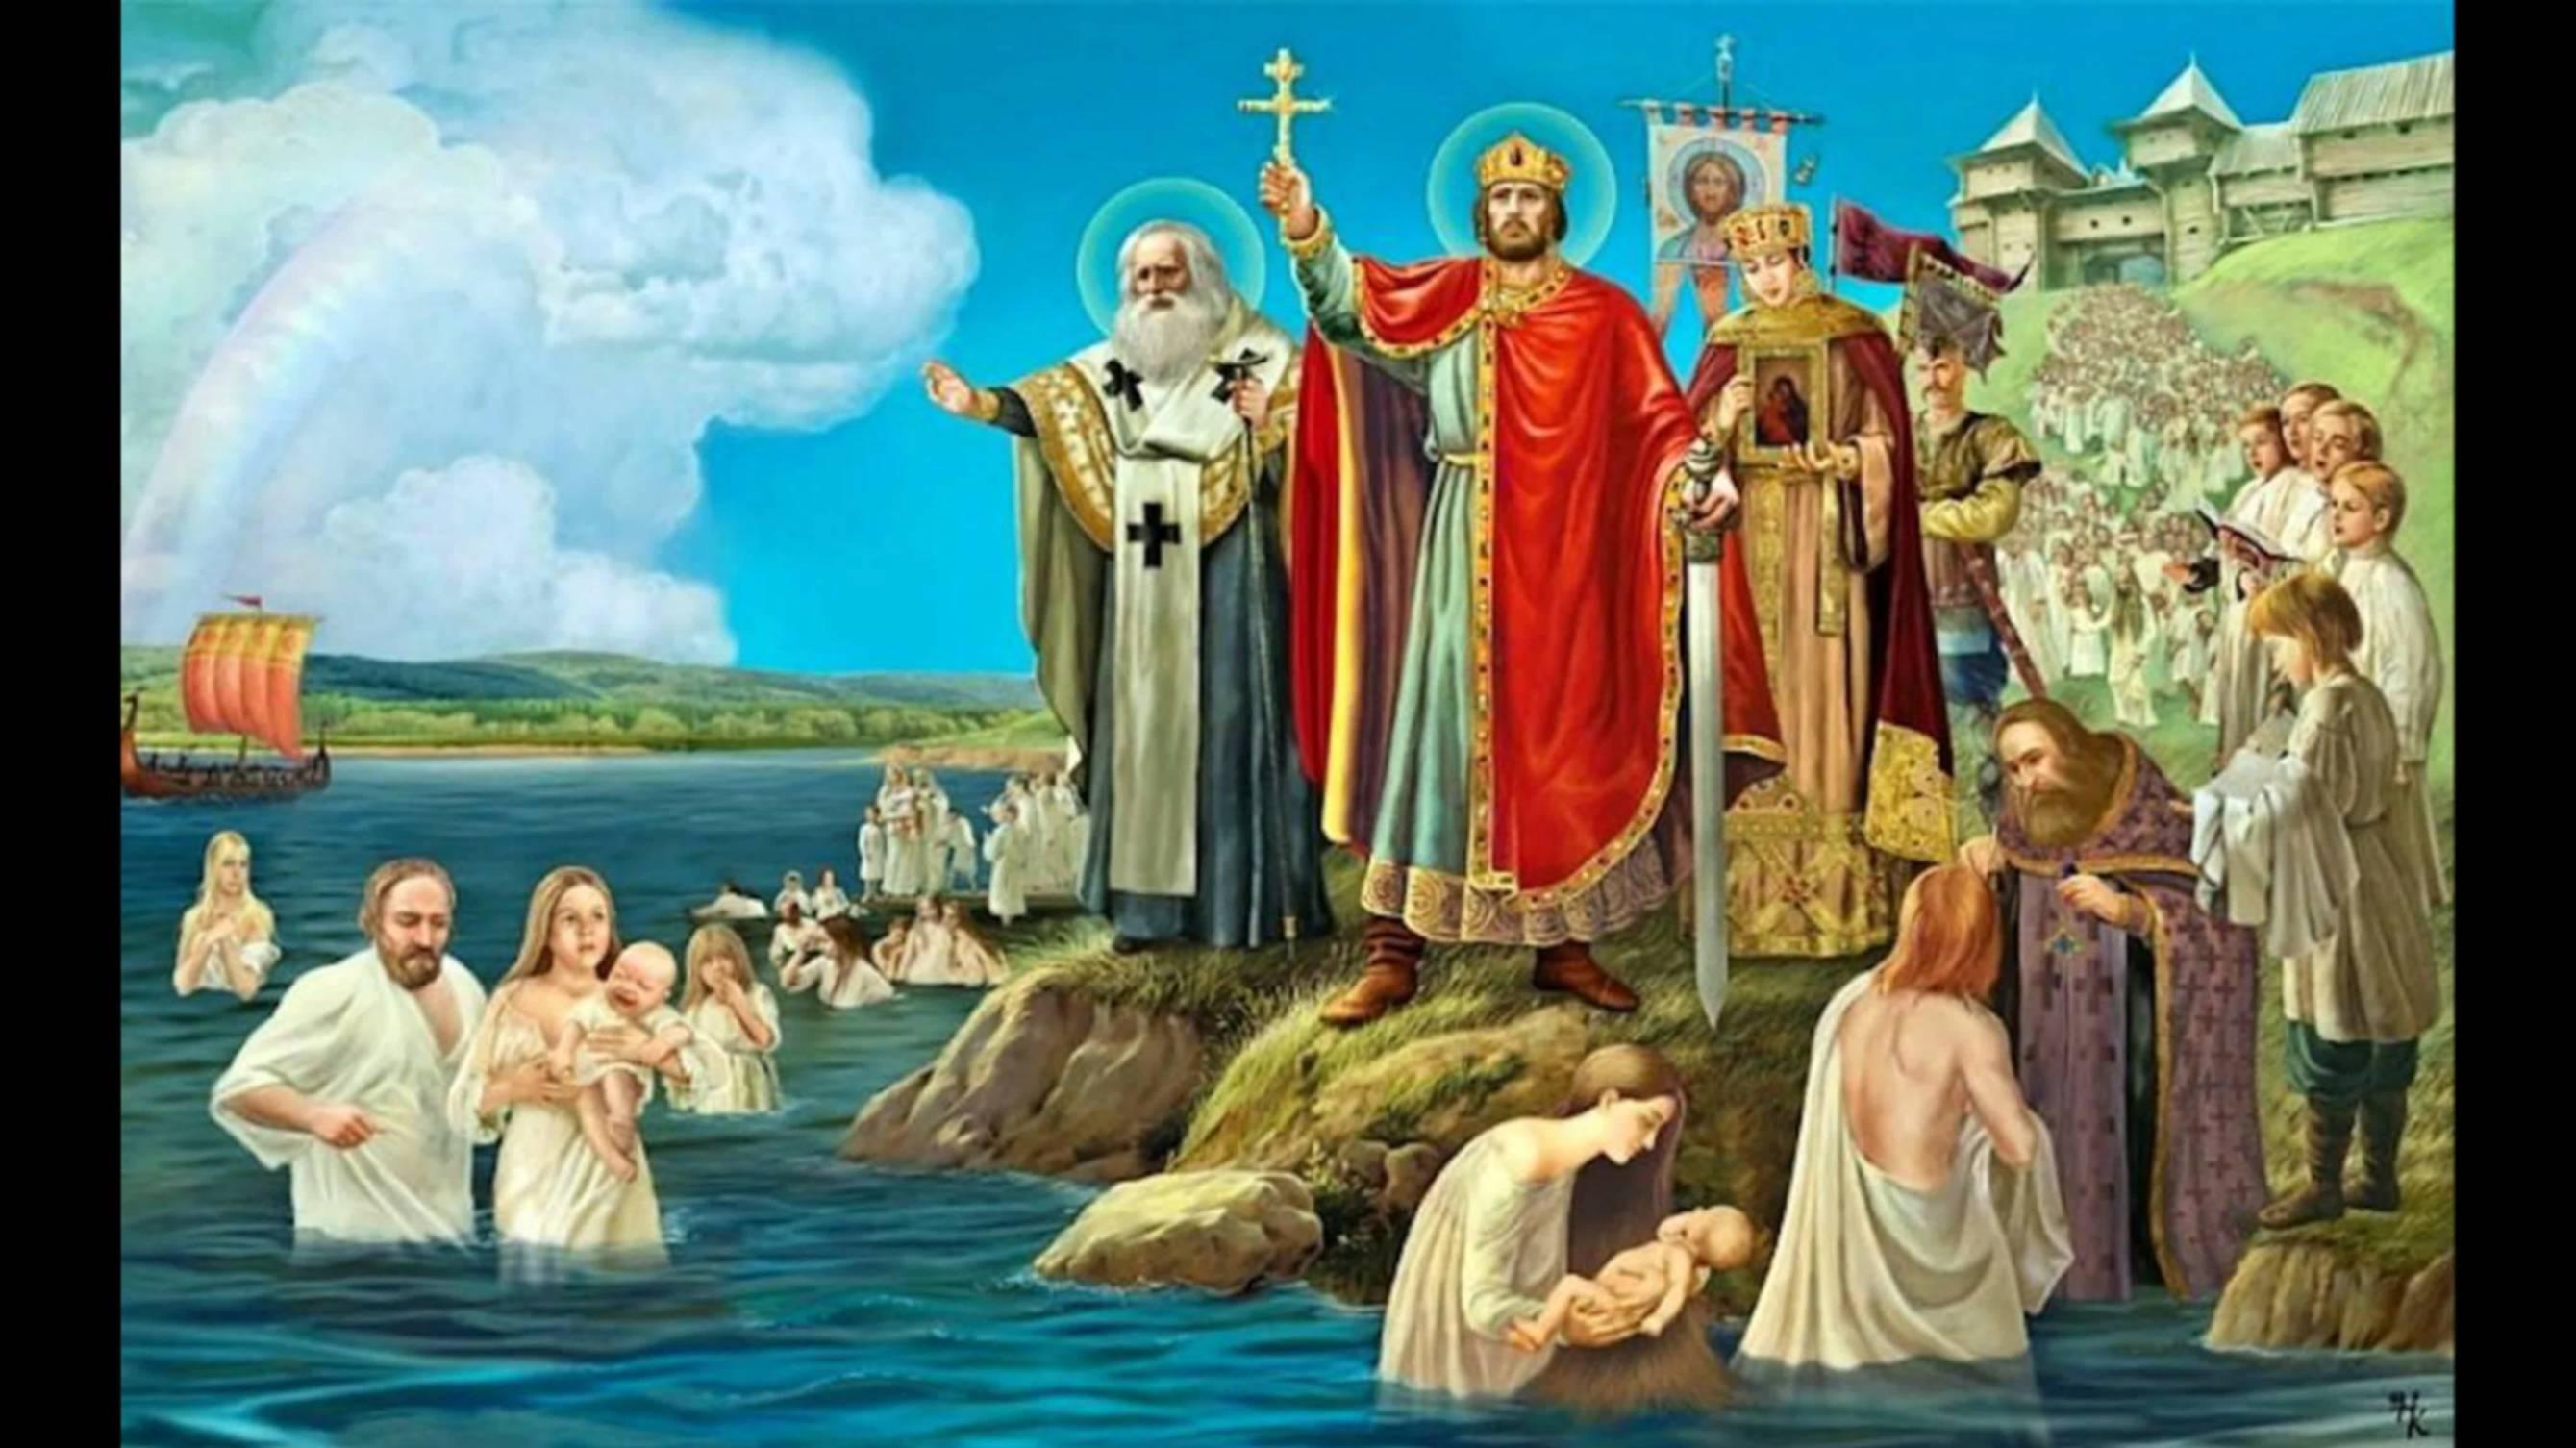 Где началось крещение руси. Крещение князя Владимира. 988 Год крещение Руси князем Владимиром.